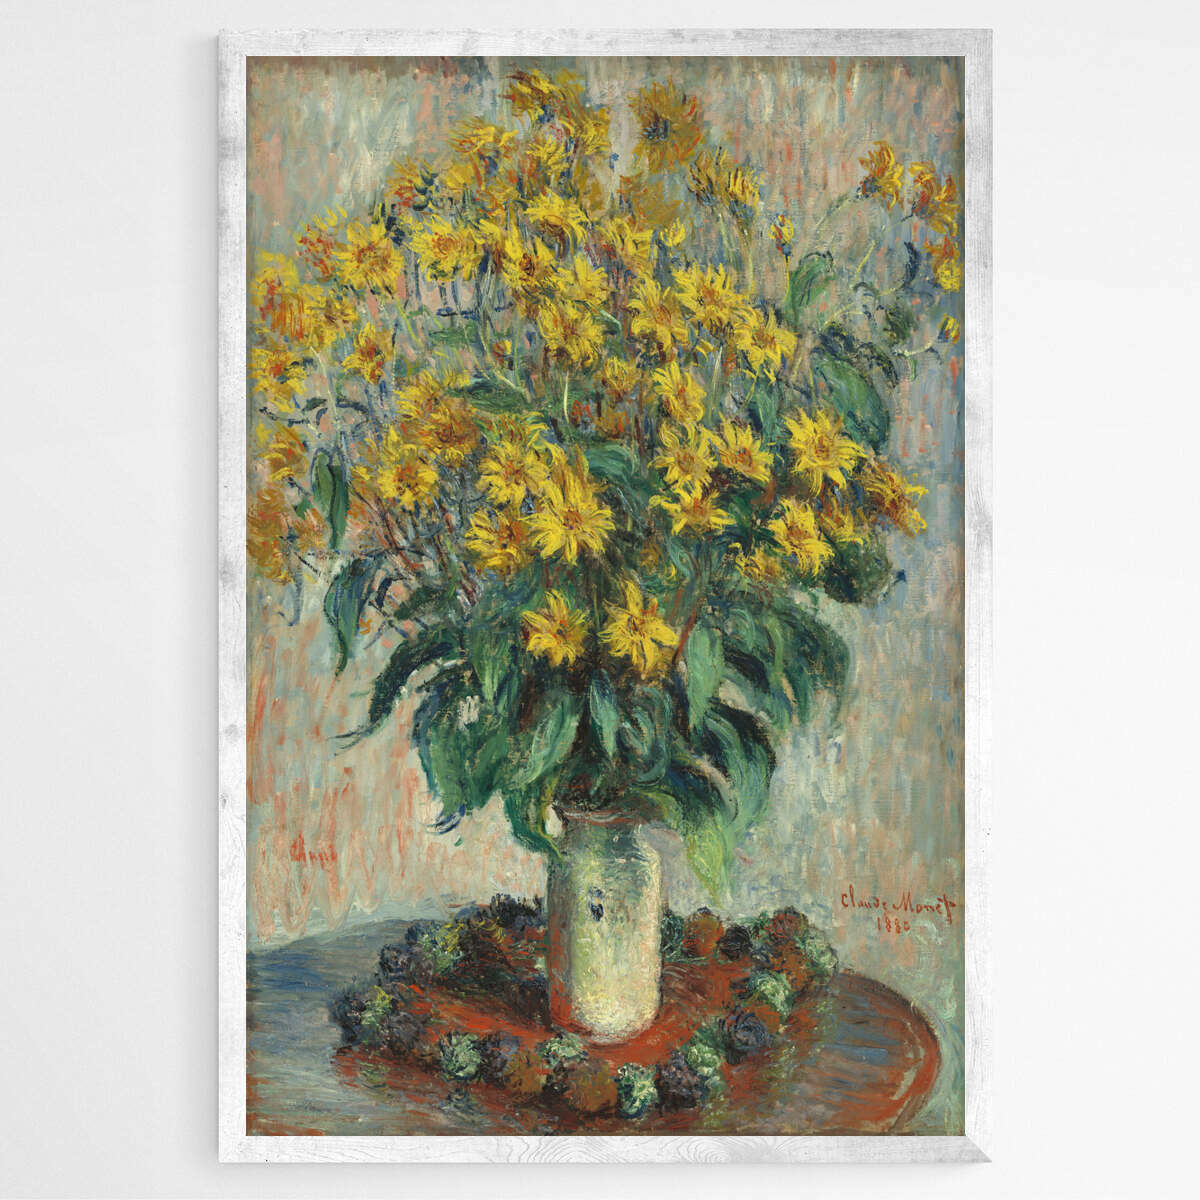 Jerusalem Artichoke Flowers by Claude Monet | Claude Monet Wall Art Prints - The Canvas Hive